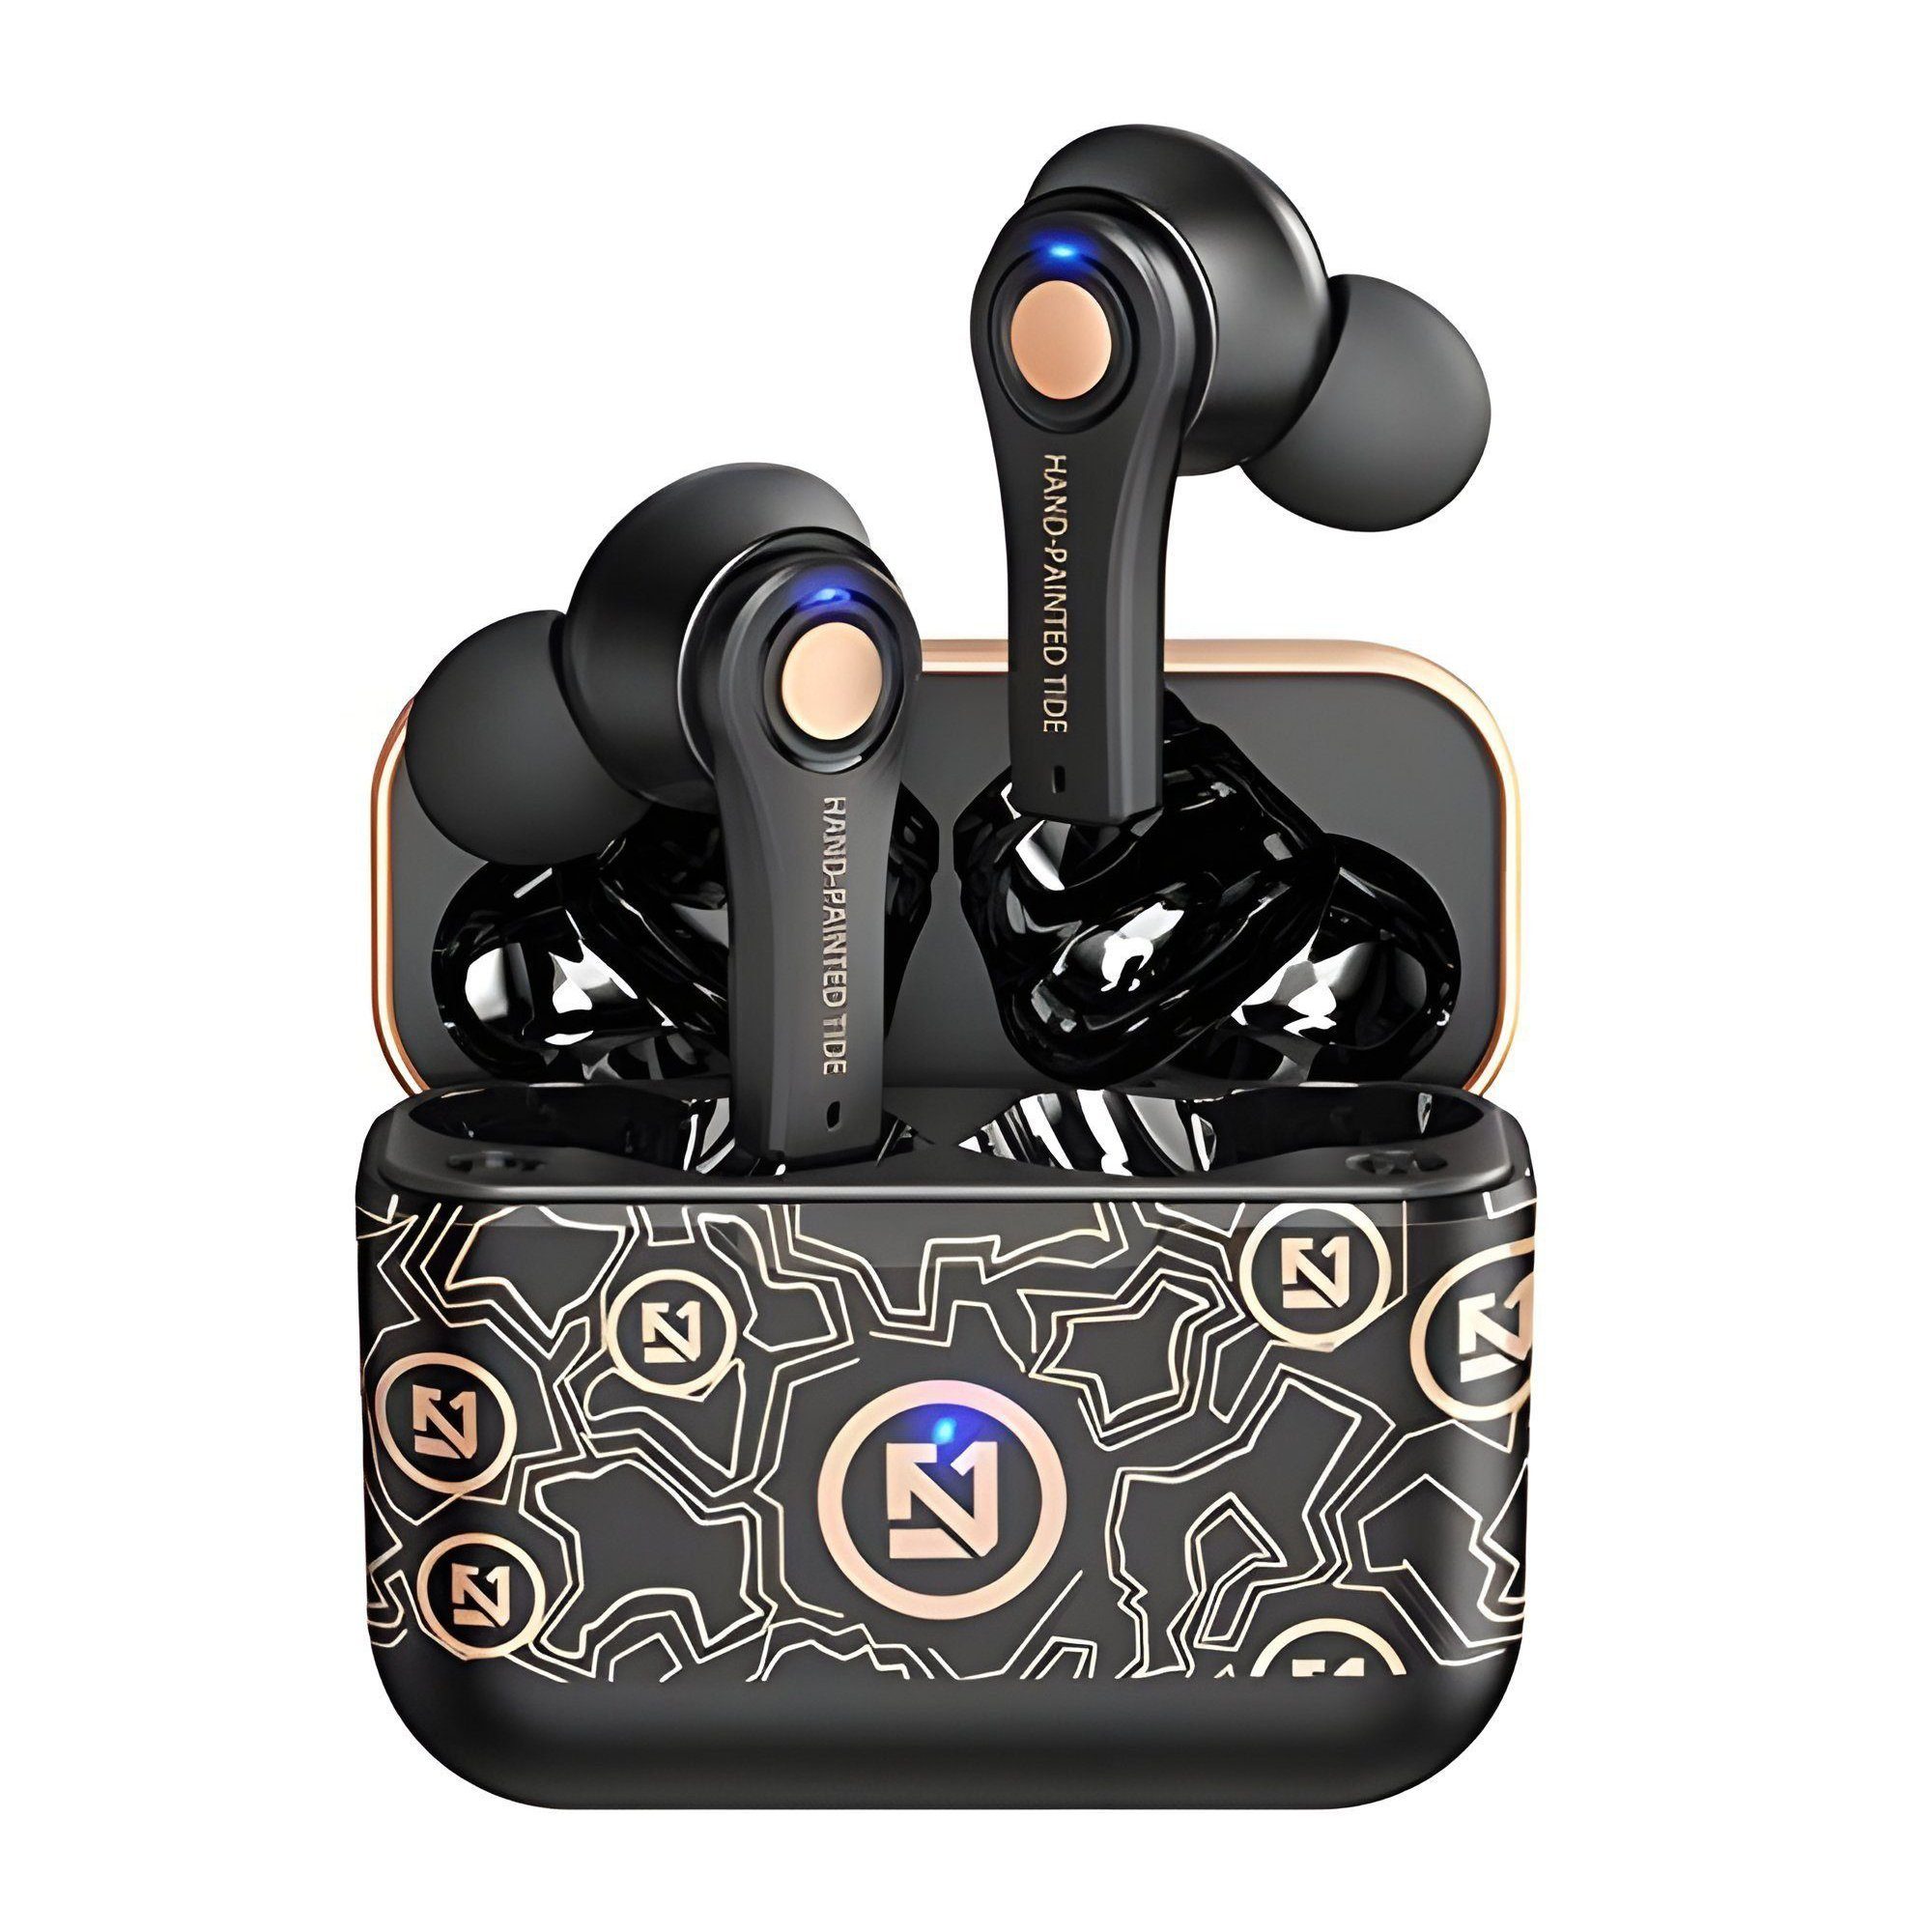 Mutoy Bluetooth Kopfhörer, Kopfhörer Kabellos Bluetooth 5.0 Noise Cancelling In-Ear-Kopfhörer (True Wireless, Tastensteuerung, IP6 Wasserdichte, 40 Stunden Spielzeit) Schwarz